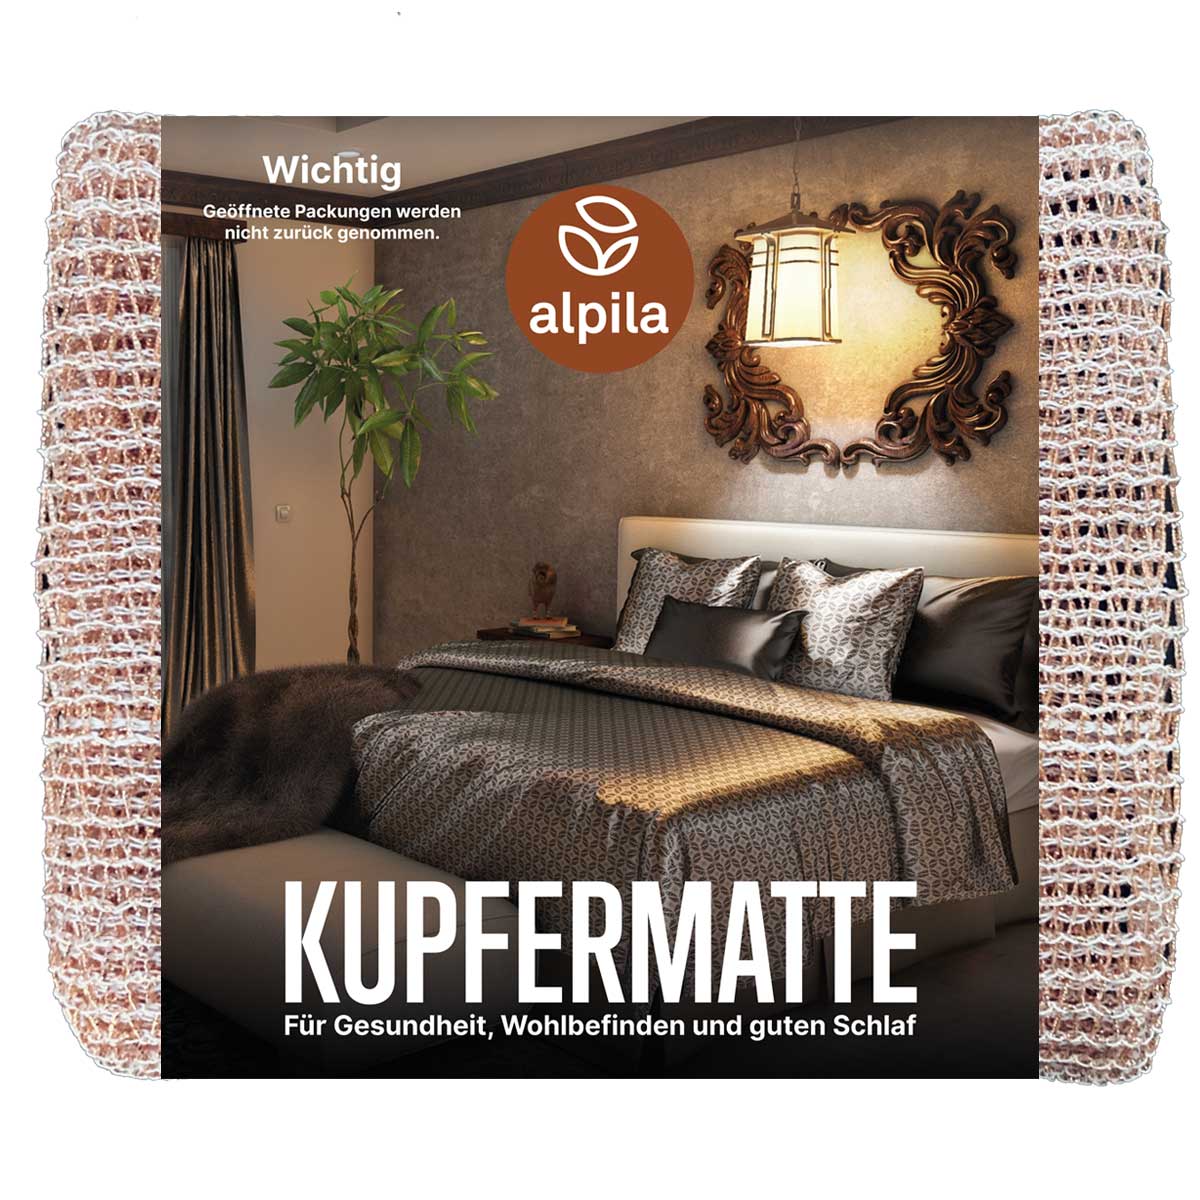 Kupfermatte alpila für gesunden Schlaf 90x190